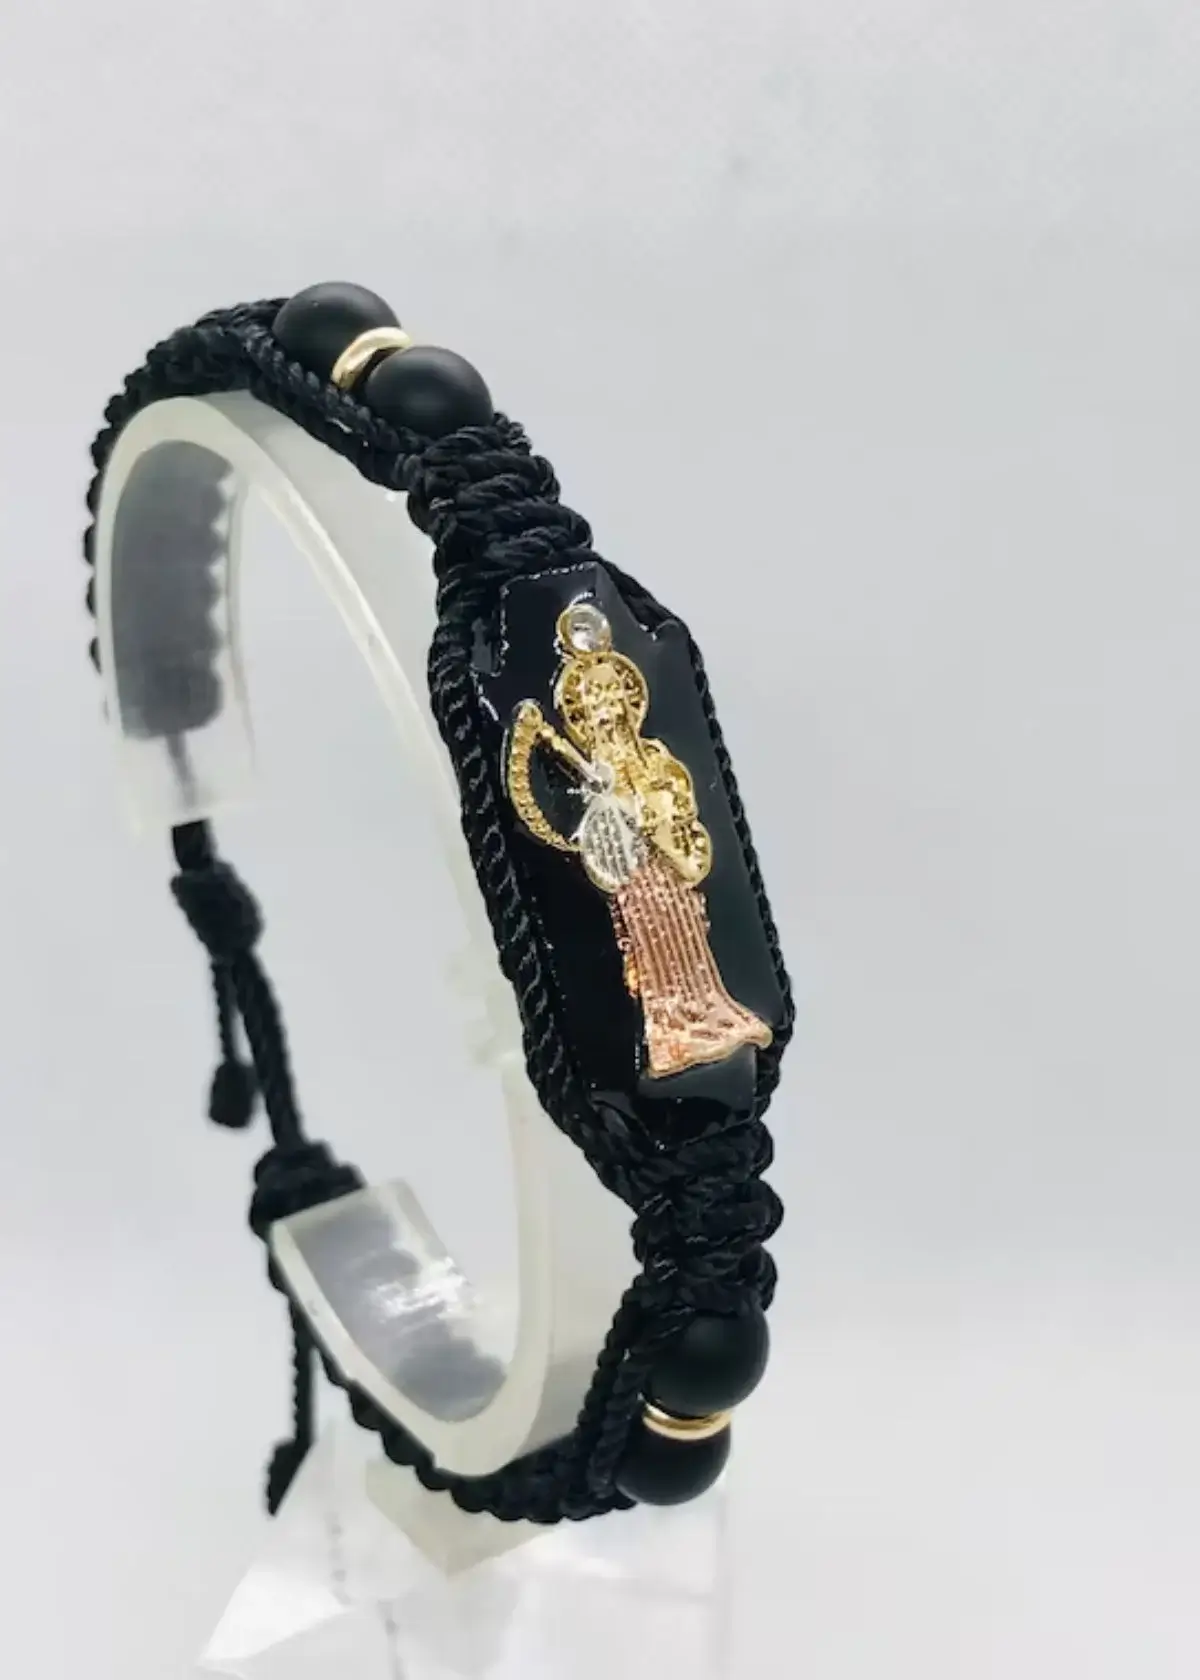 How to choose the right santa muerte bracelet?